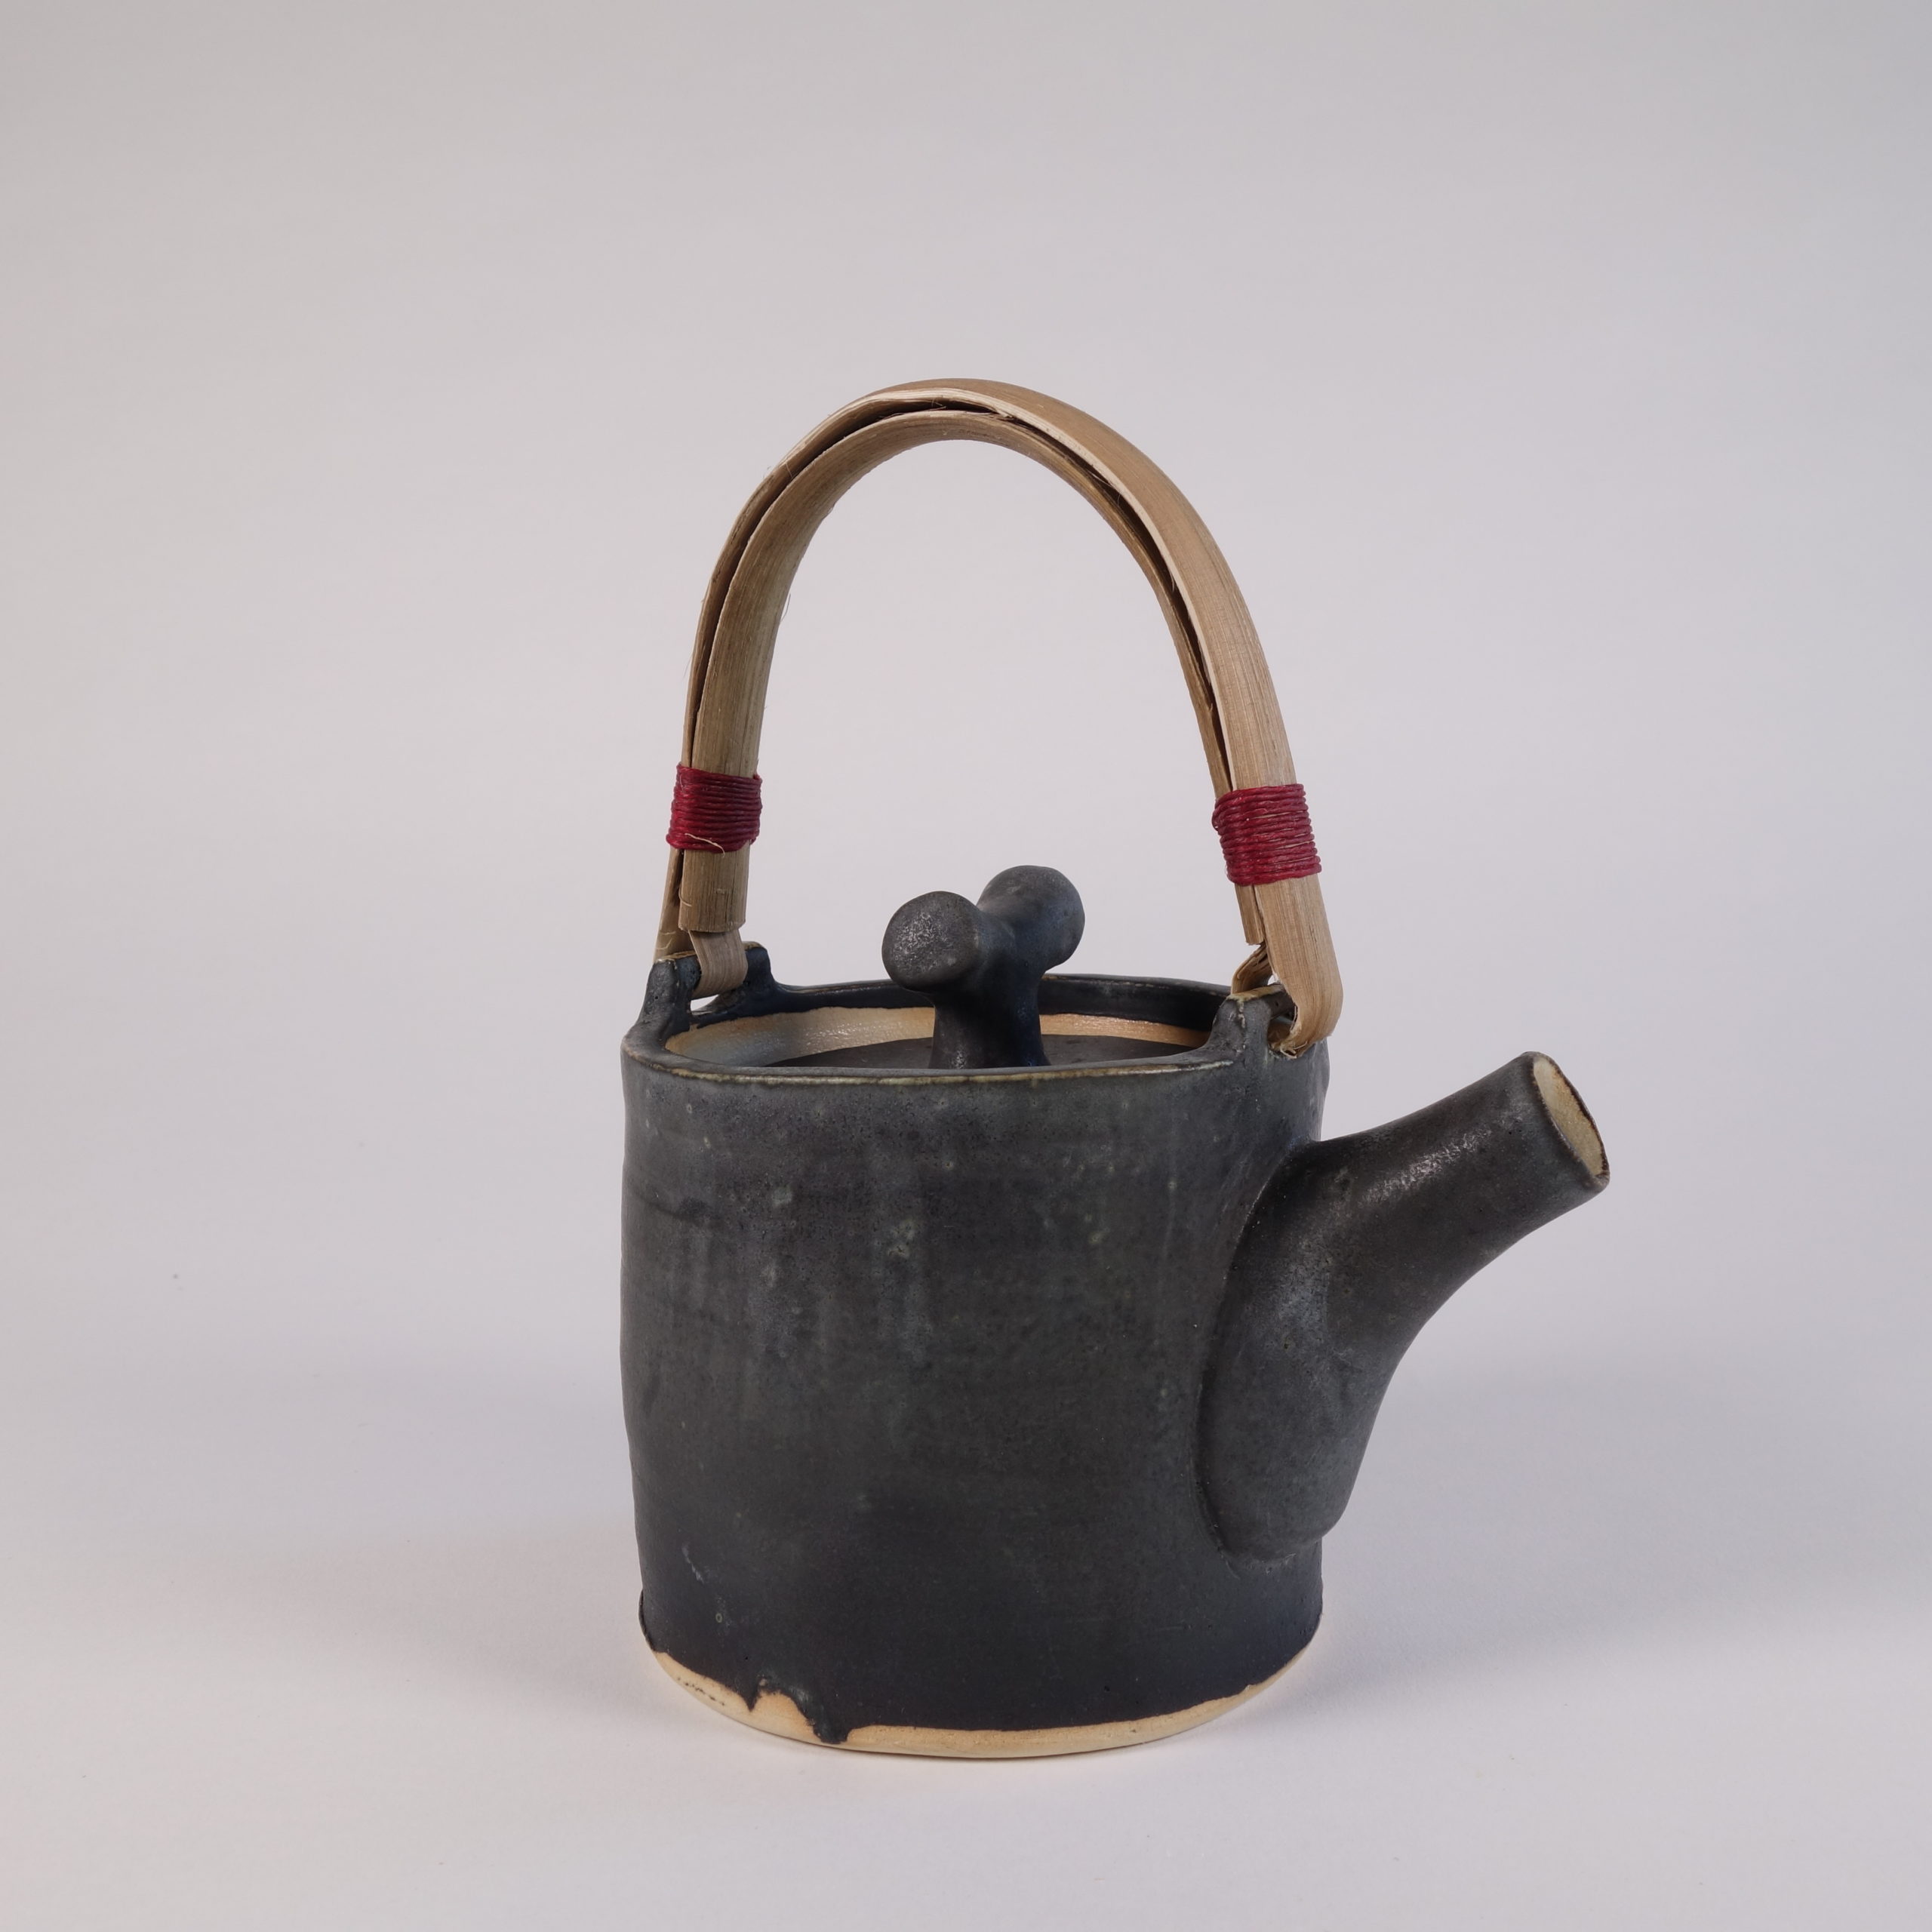 Teapot - Helle bovbjerg